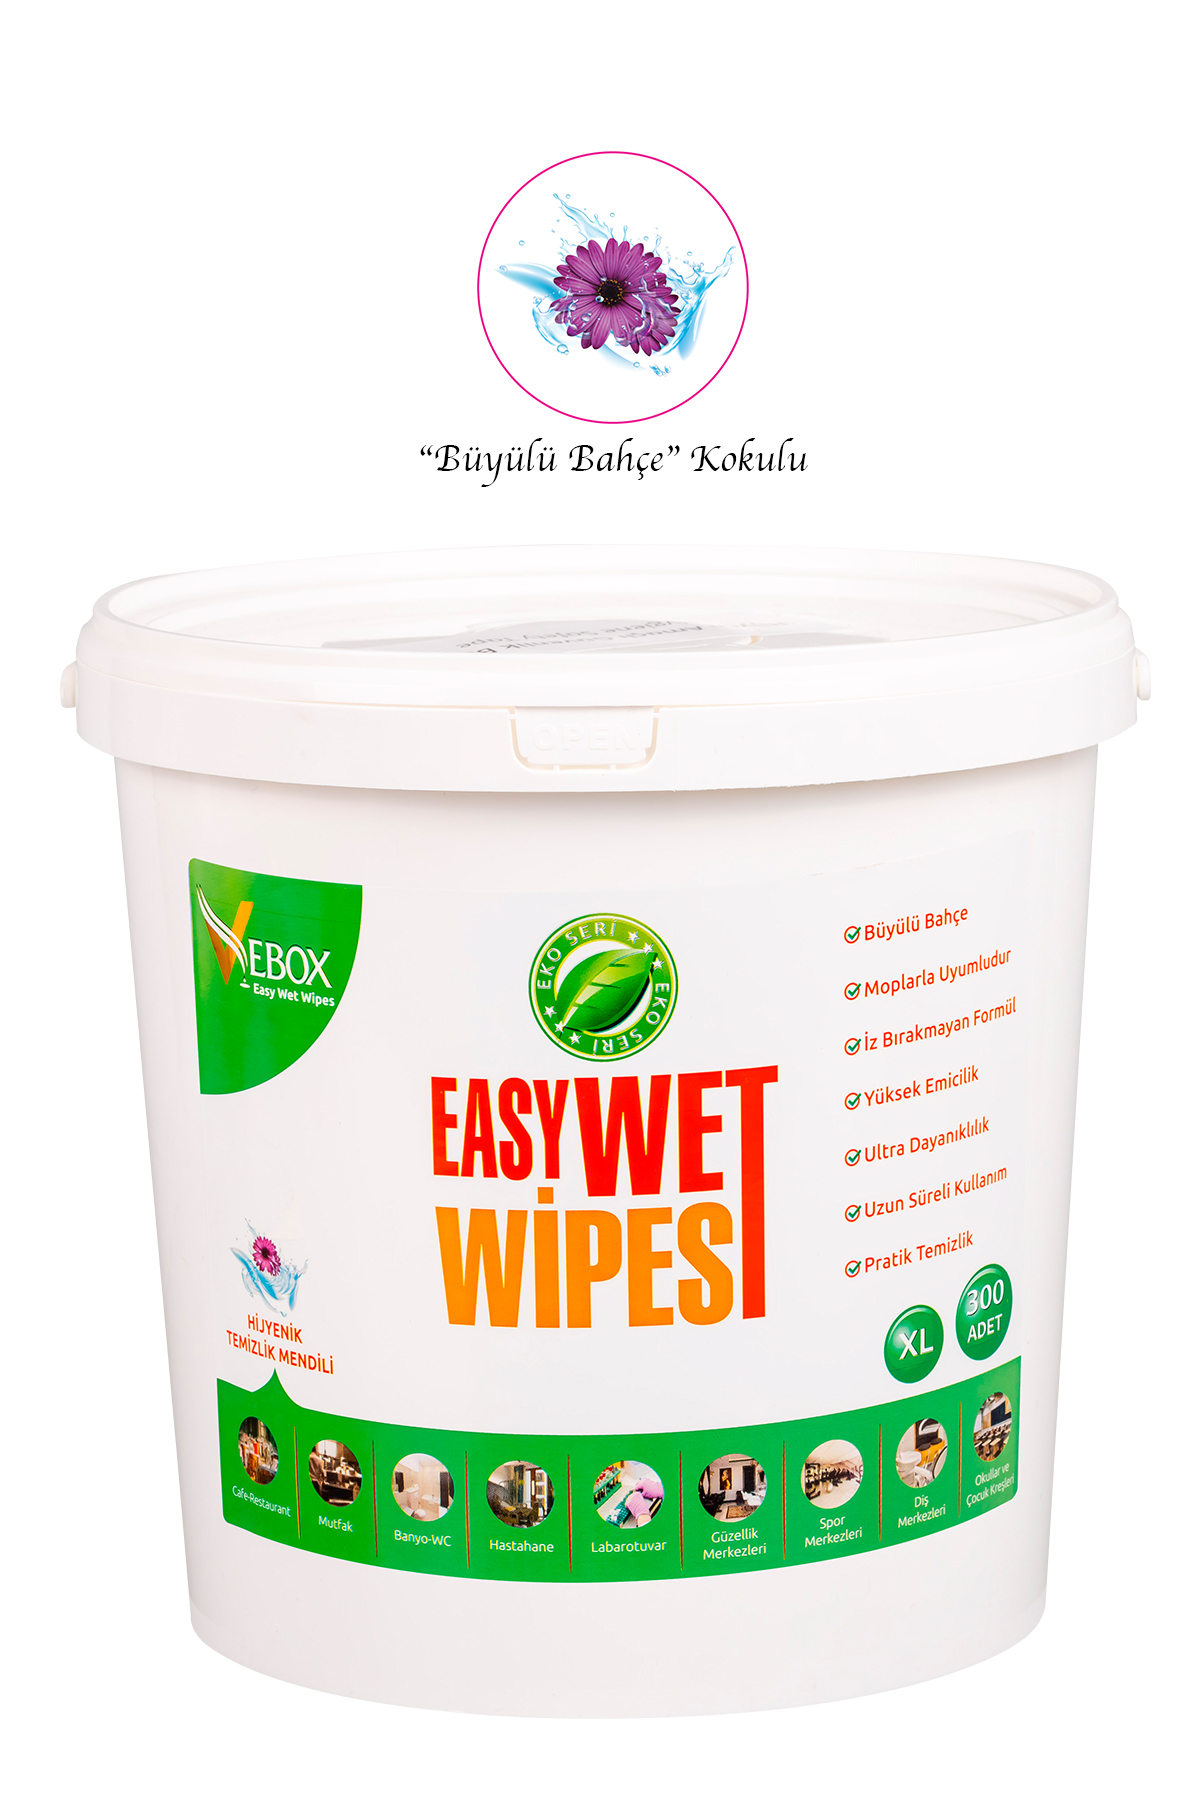 Vebox Easy Wet Wipes Büyülü Bahçe Kokulu Kova Hijyenik Temizlik Mendili XL 300 Adet